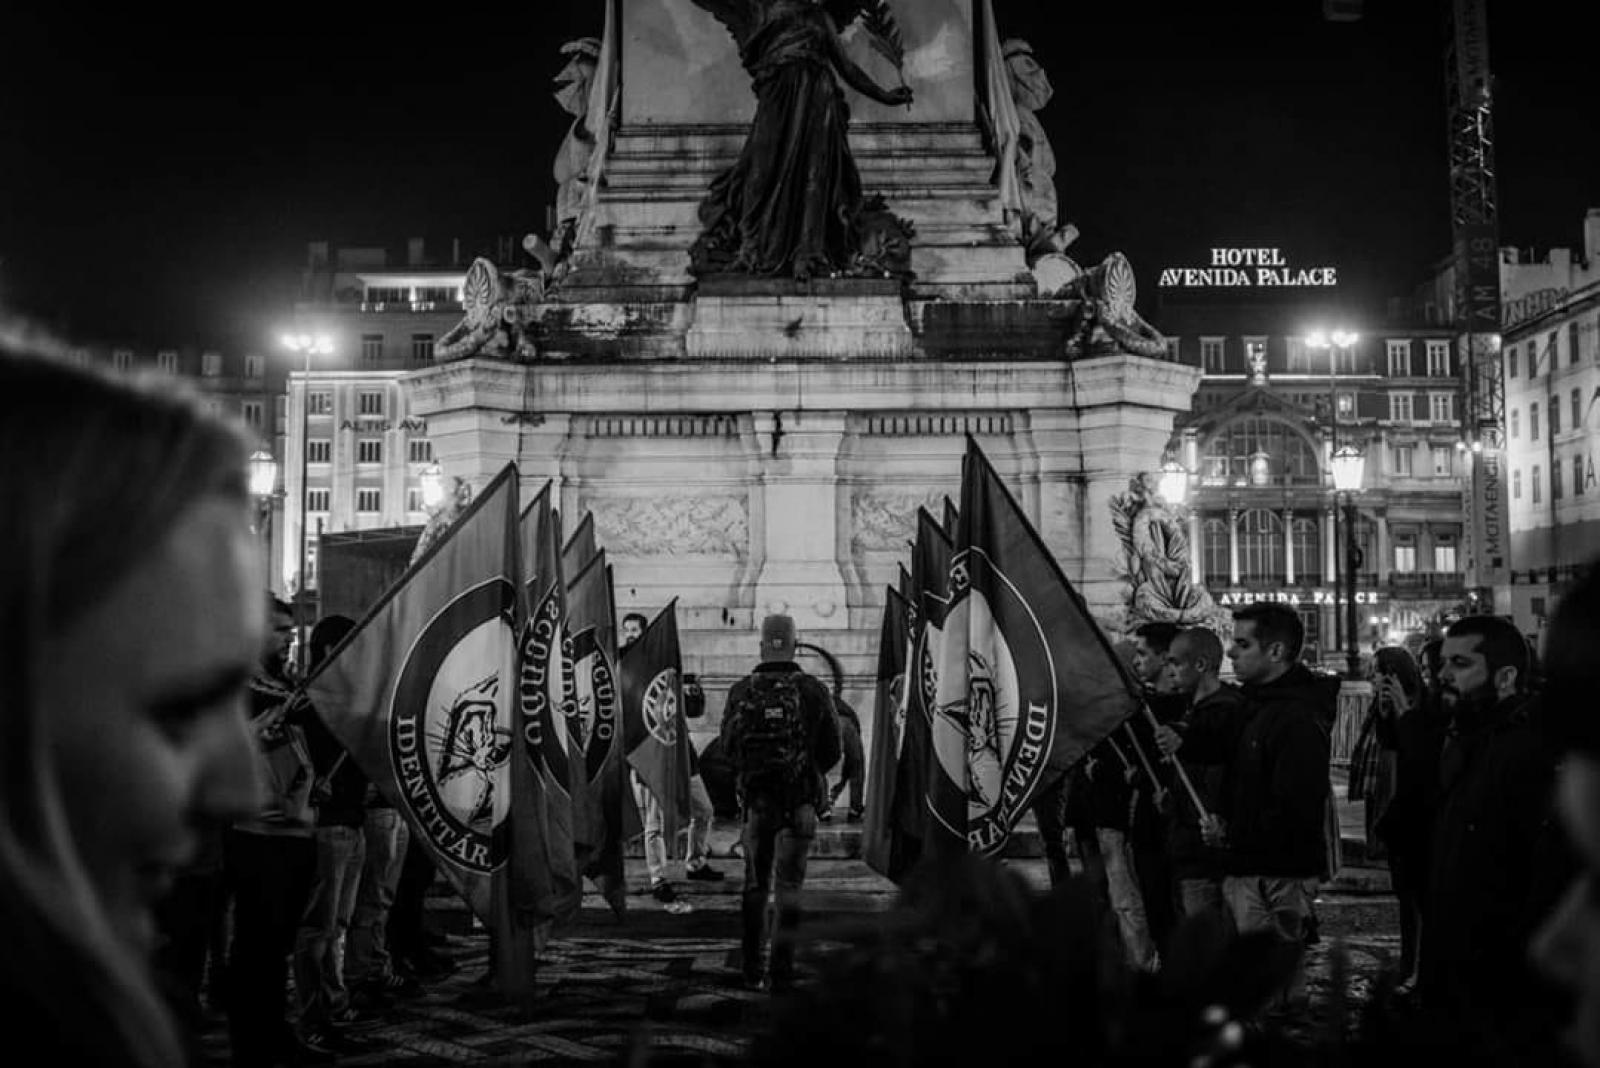 Parada neofascista do Escudo Identitário nos Restauradores, em Lisboa, em 2018